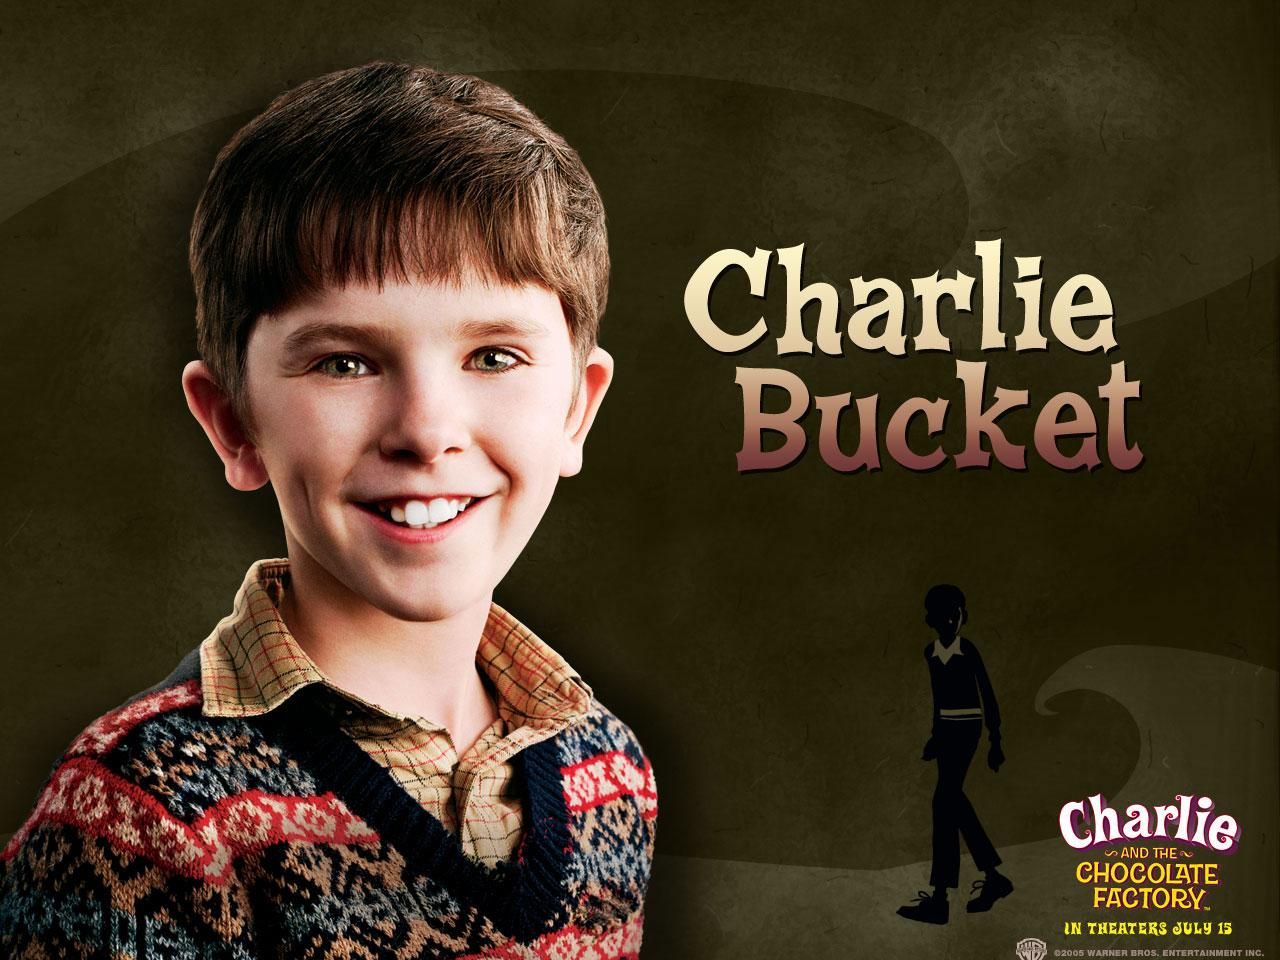 Фильм Чарли и шоколадная фабрика | Charlie and the Chocolate Factory - лучшие обои для рабочего стола